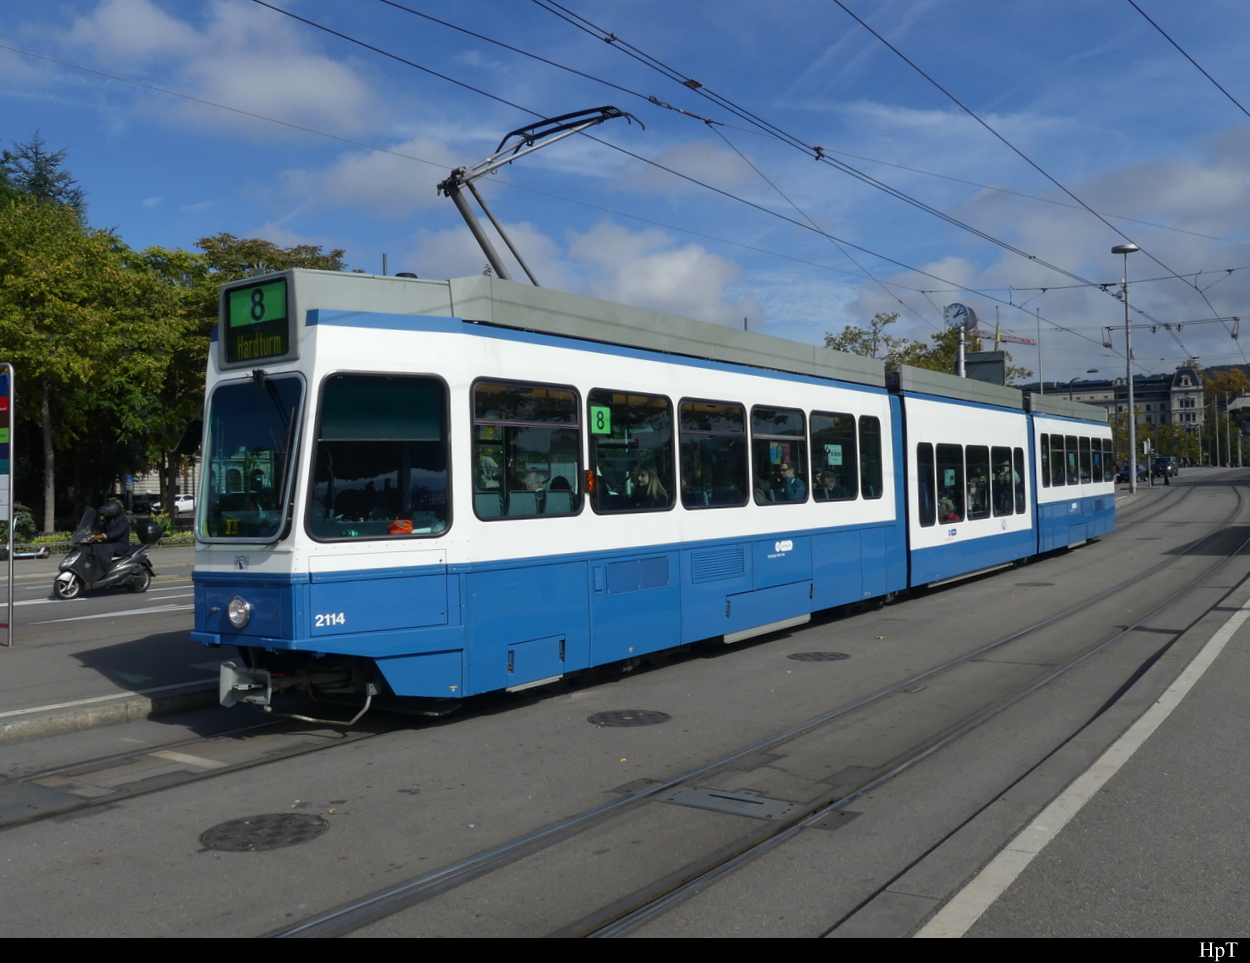 VBZ - Tram Be 4/8 2114 unterwegs auf der Linie 8 in der Stadt Zürich am 04.10.2022